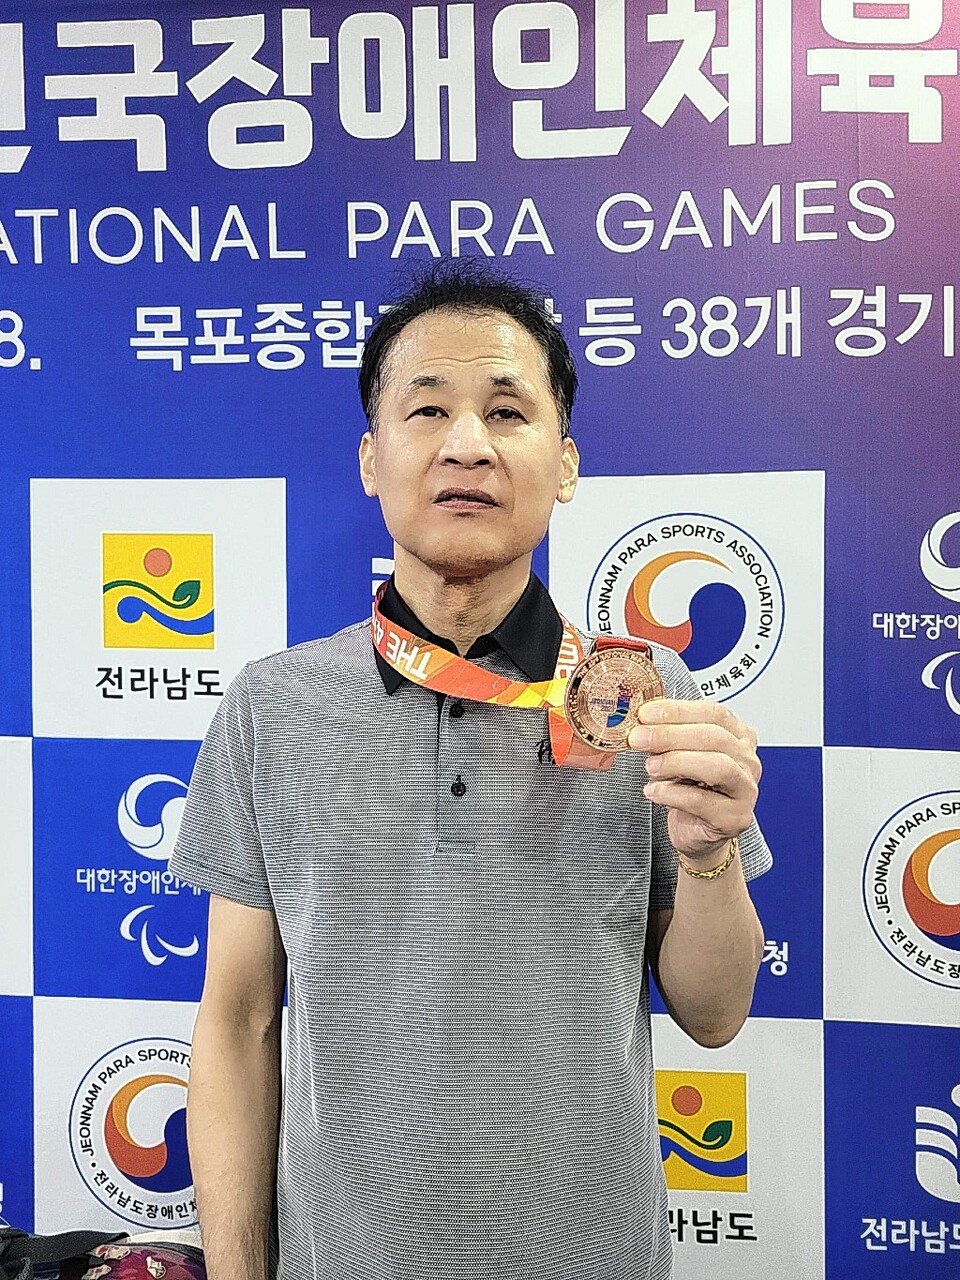 전국장애인체육대회 볼링 남자 TPB1 개인전에서 동메달을 획득한 한국석유공사의 김영철이 기념촬영을 하고 있다.